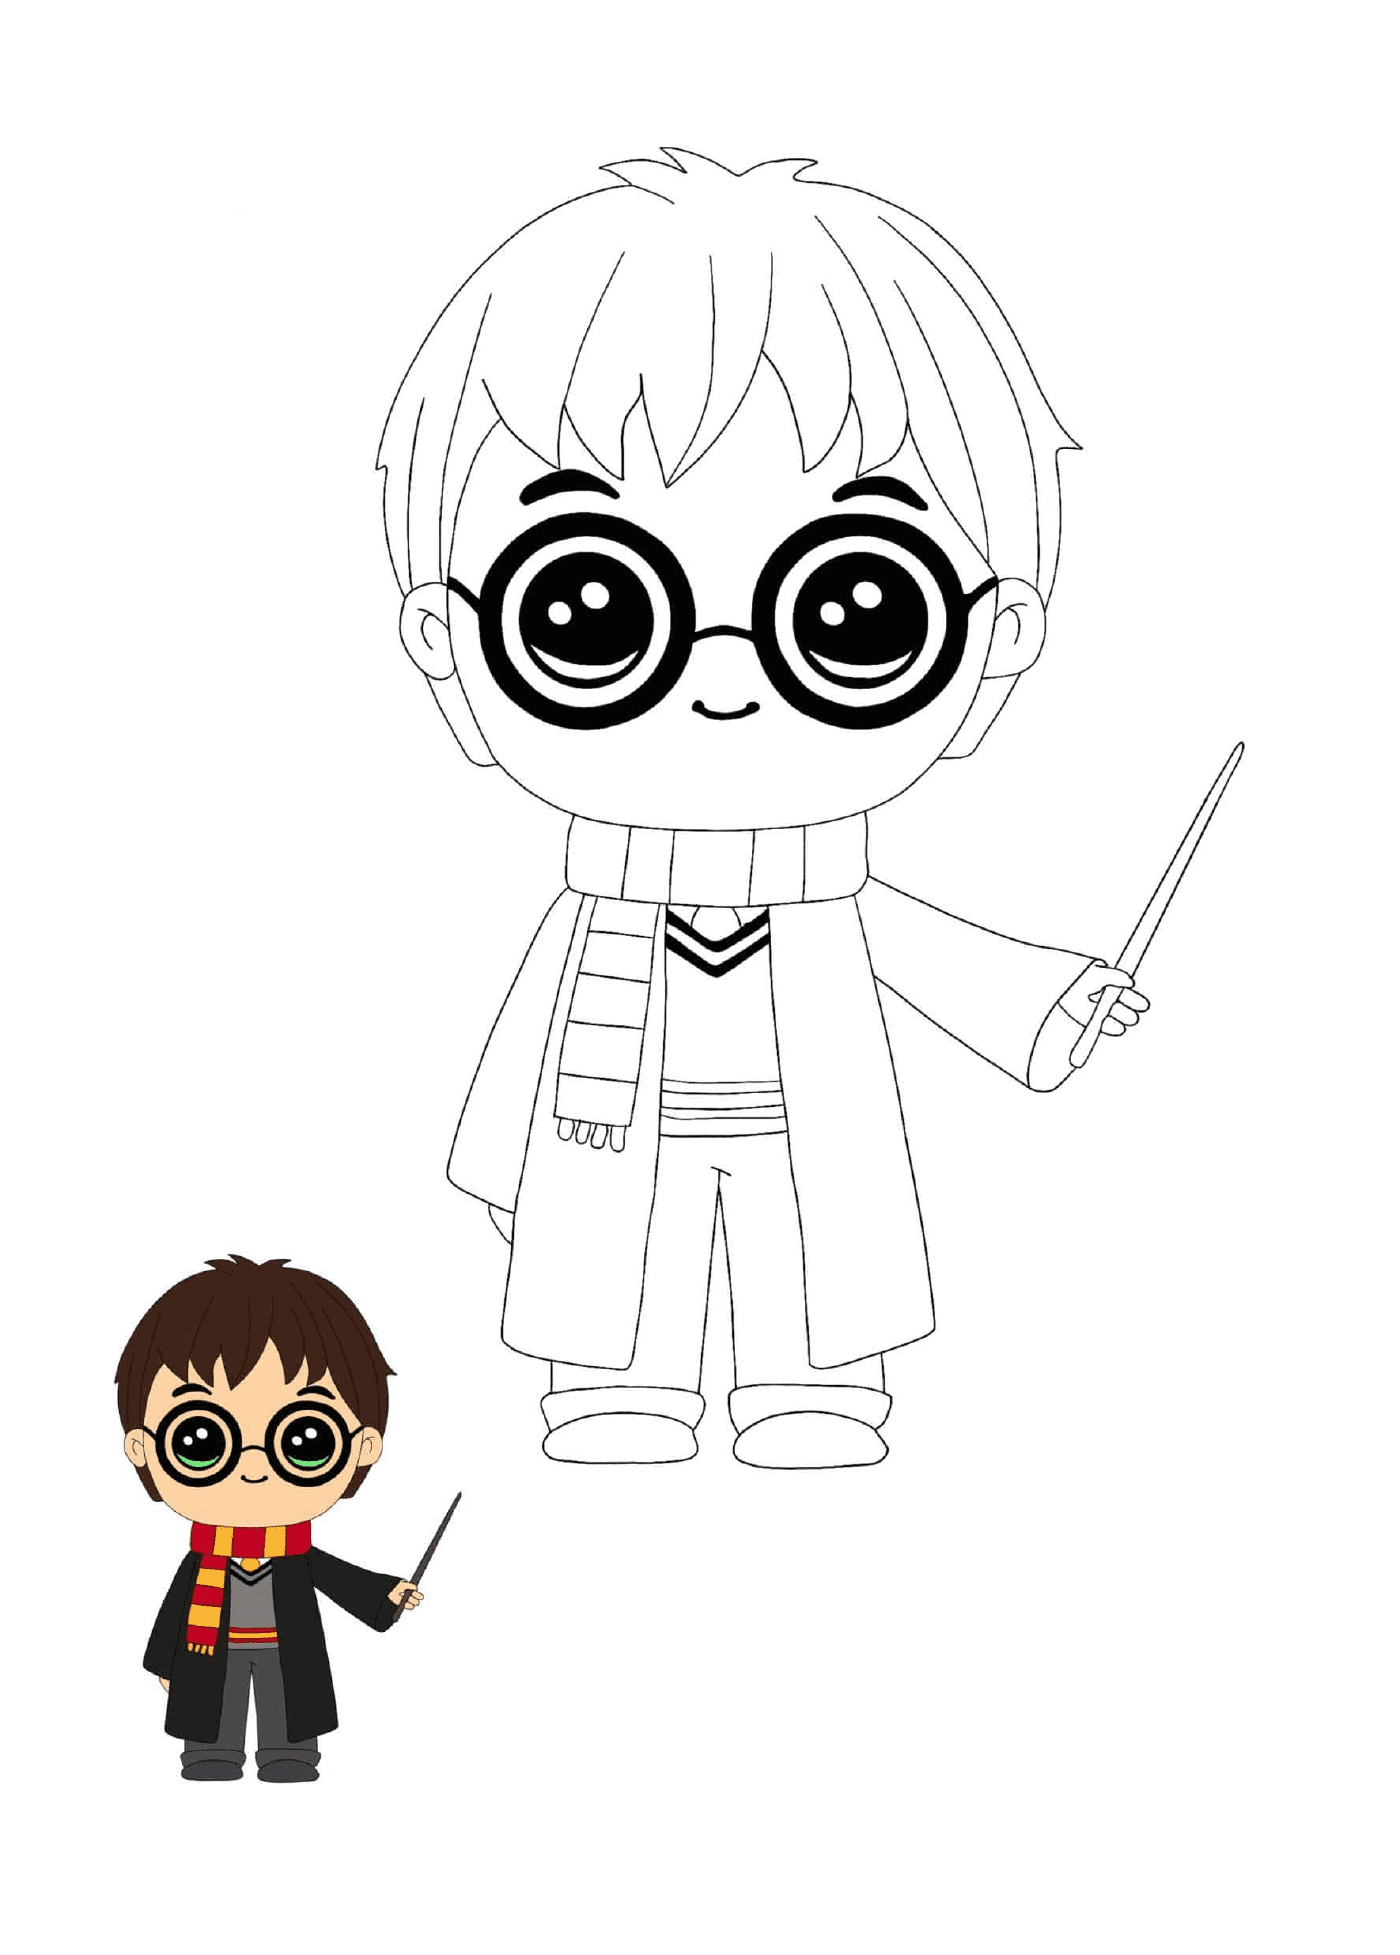  Harry Potter kawaii, cute 